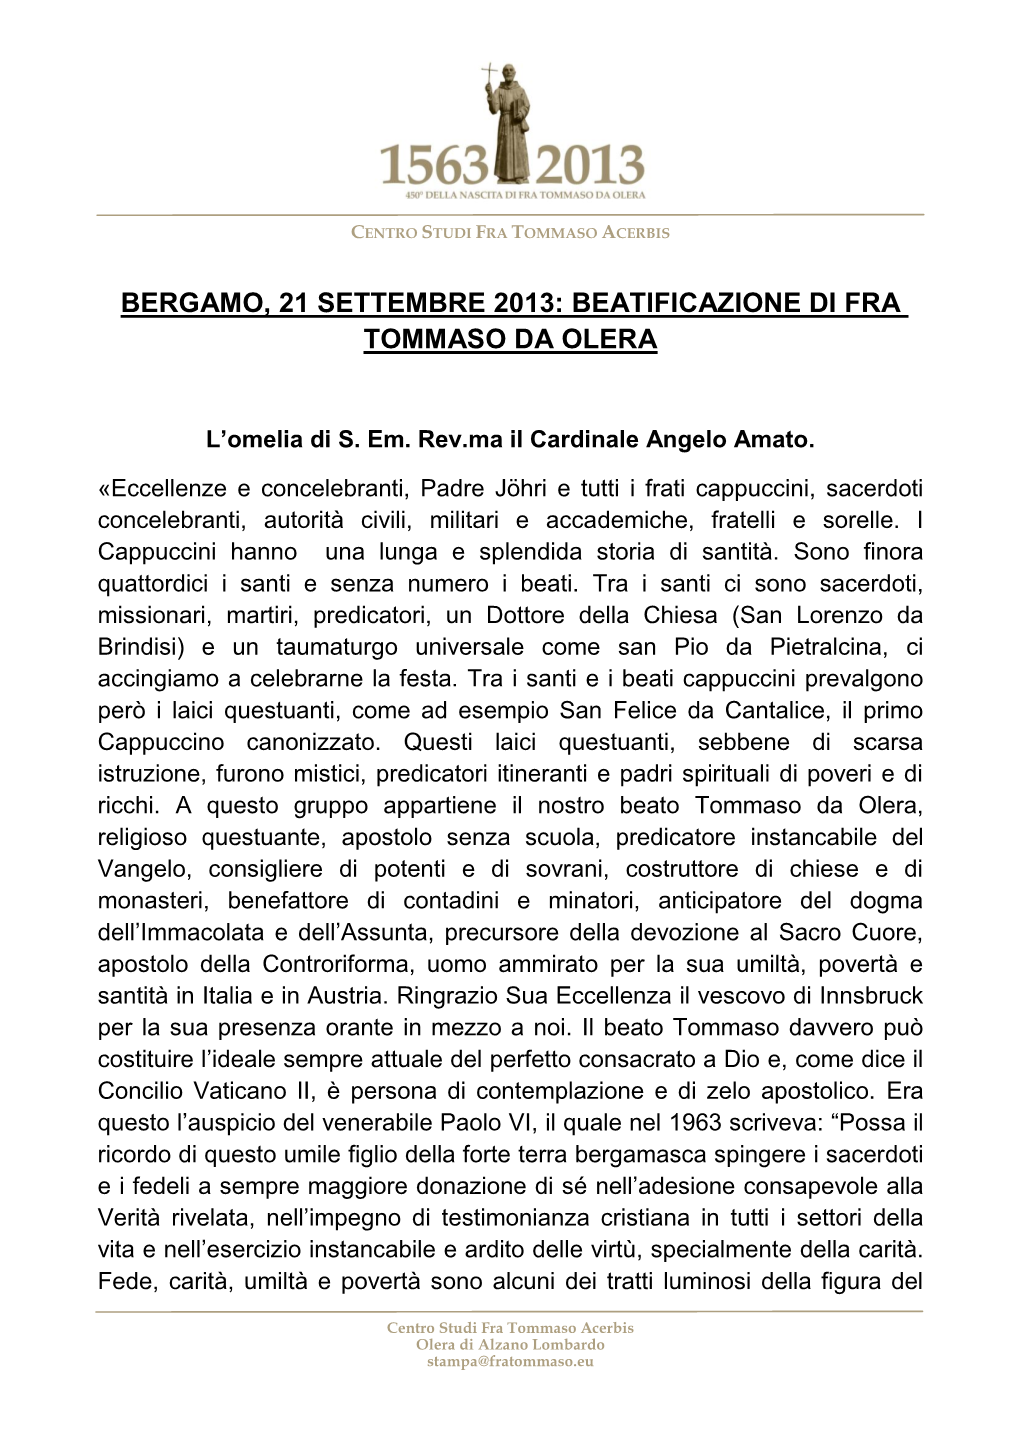 Bergamo, 21 Settembre 2013: Beatificazione Di Fra Tommaso Da Olera